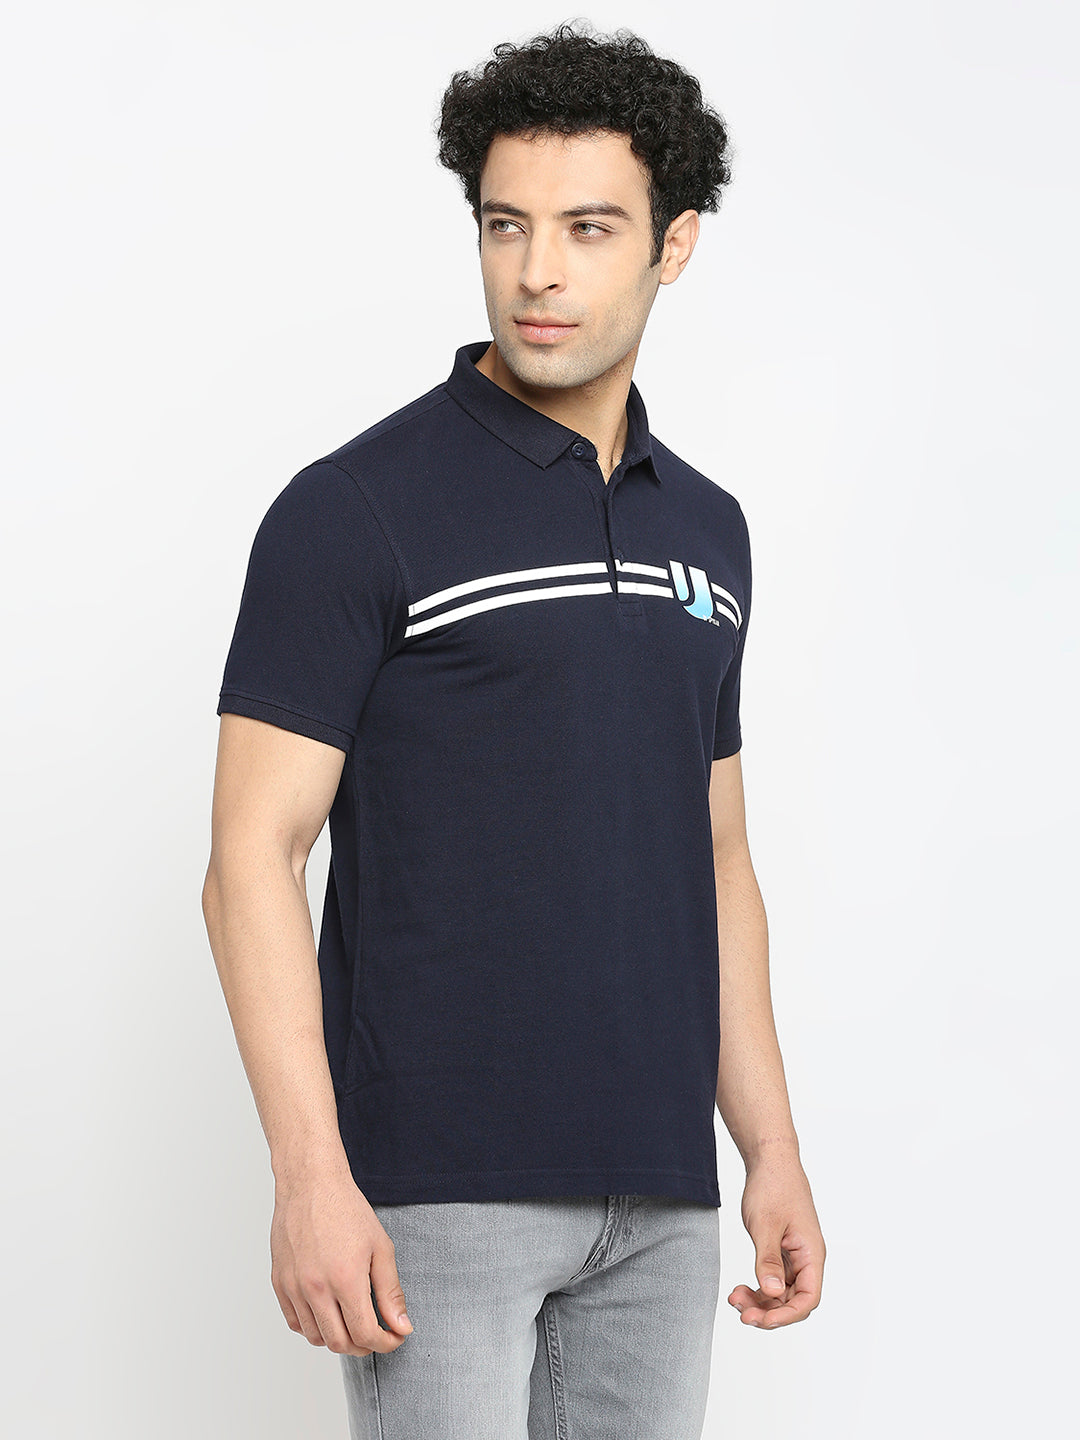 Men Premium Cotton Navy Blue Polo T-shirt- UnderJeans by Spykar